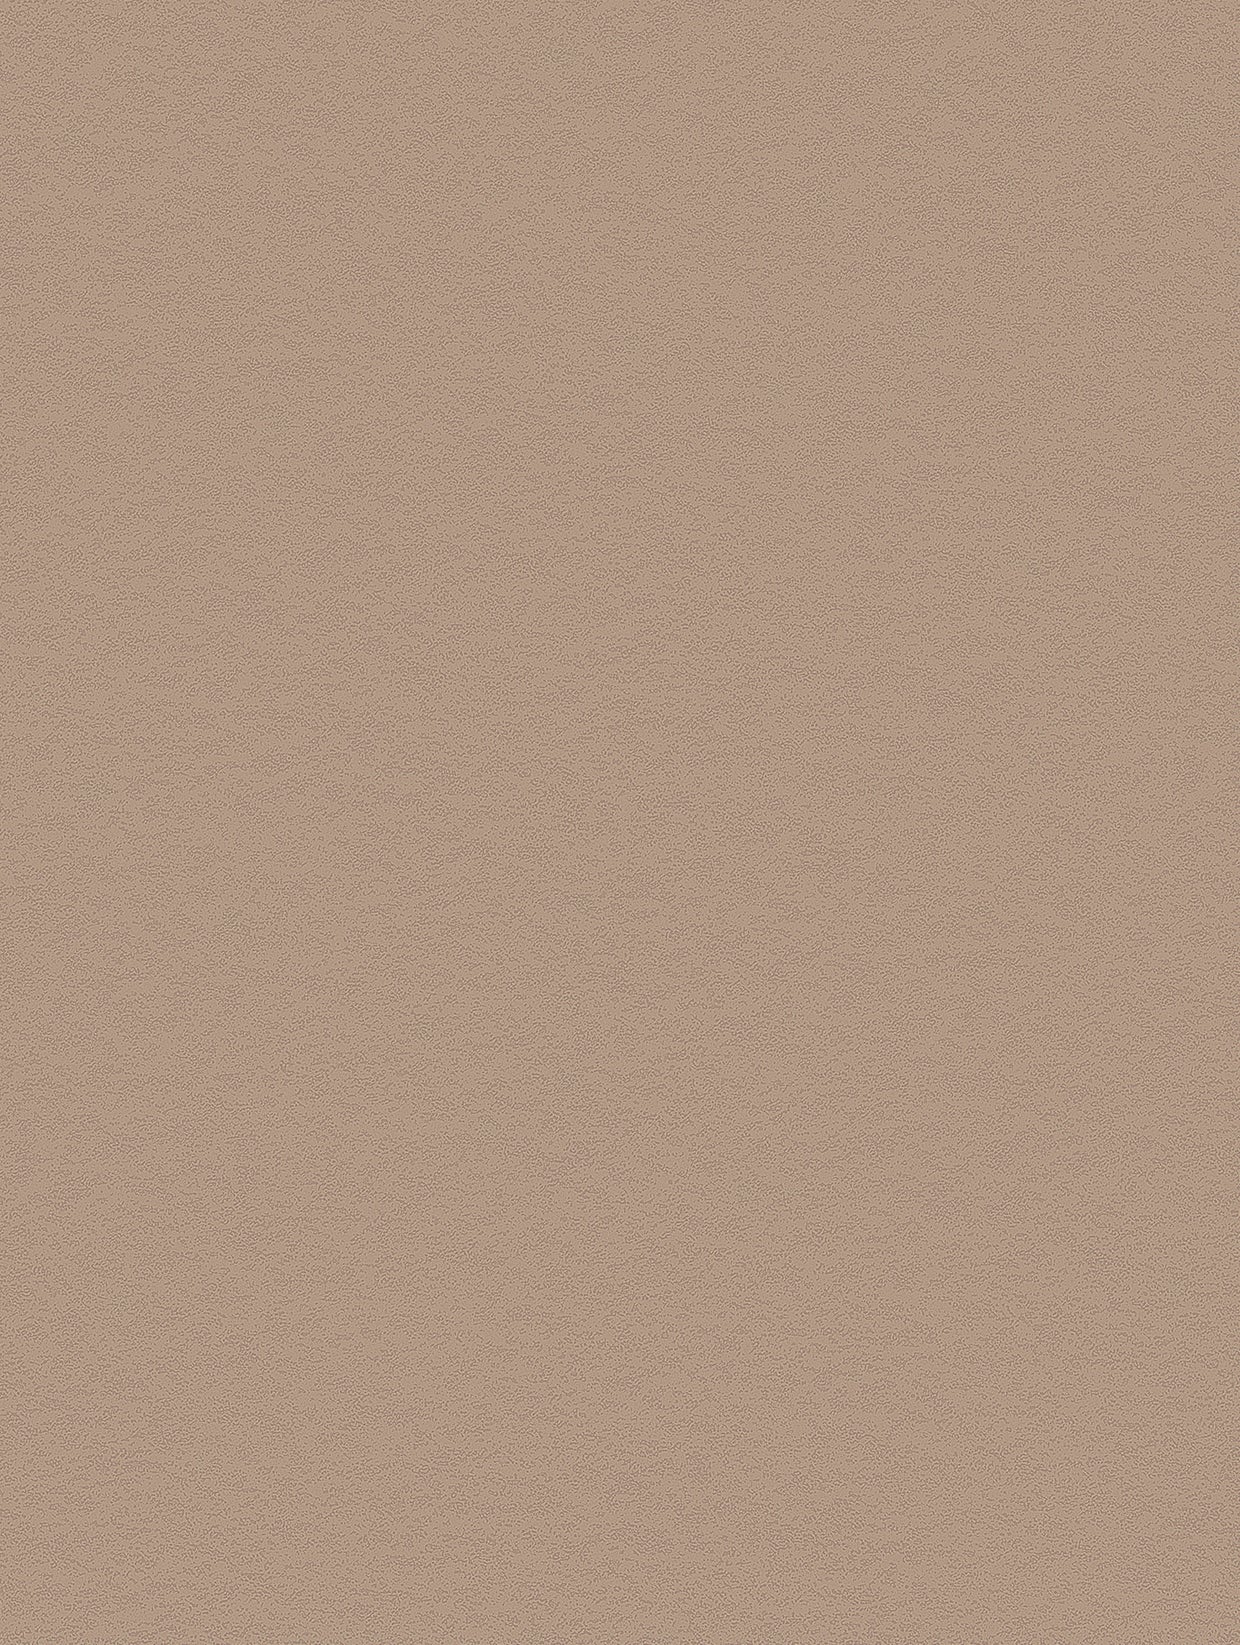 Beton Puur | Betondecor - Meubelfolie Zelfklevend behang Vinylfolie voor meubelwandplank (100x122cm)